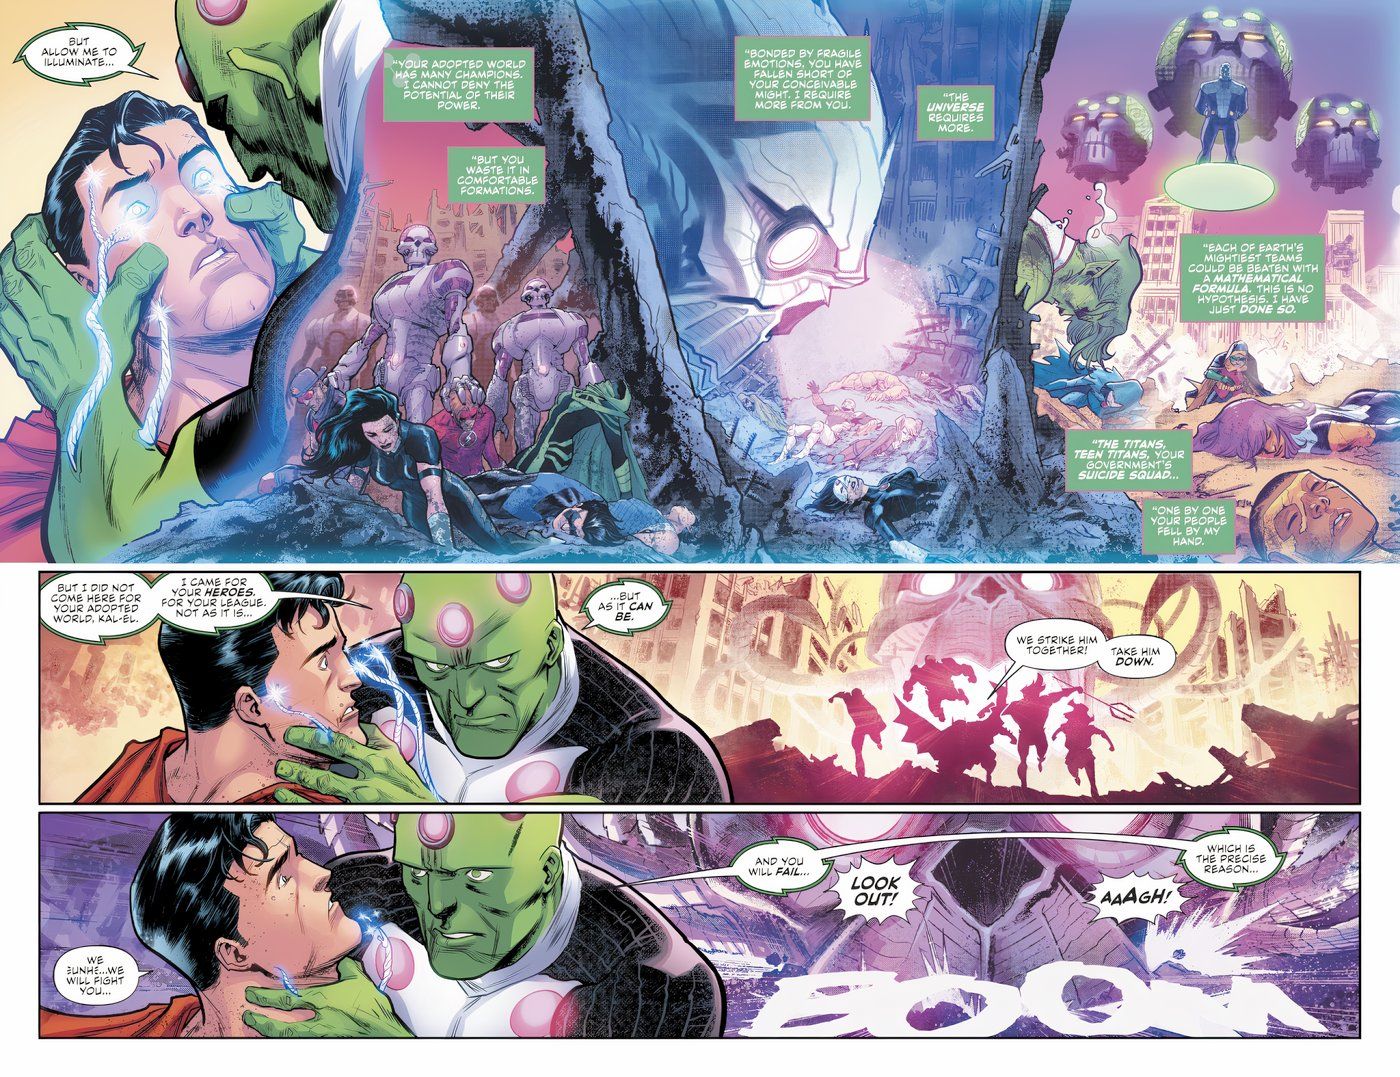 Brainiac derrota todas as equipes de super-heróis da Terra